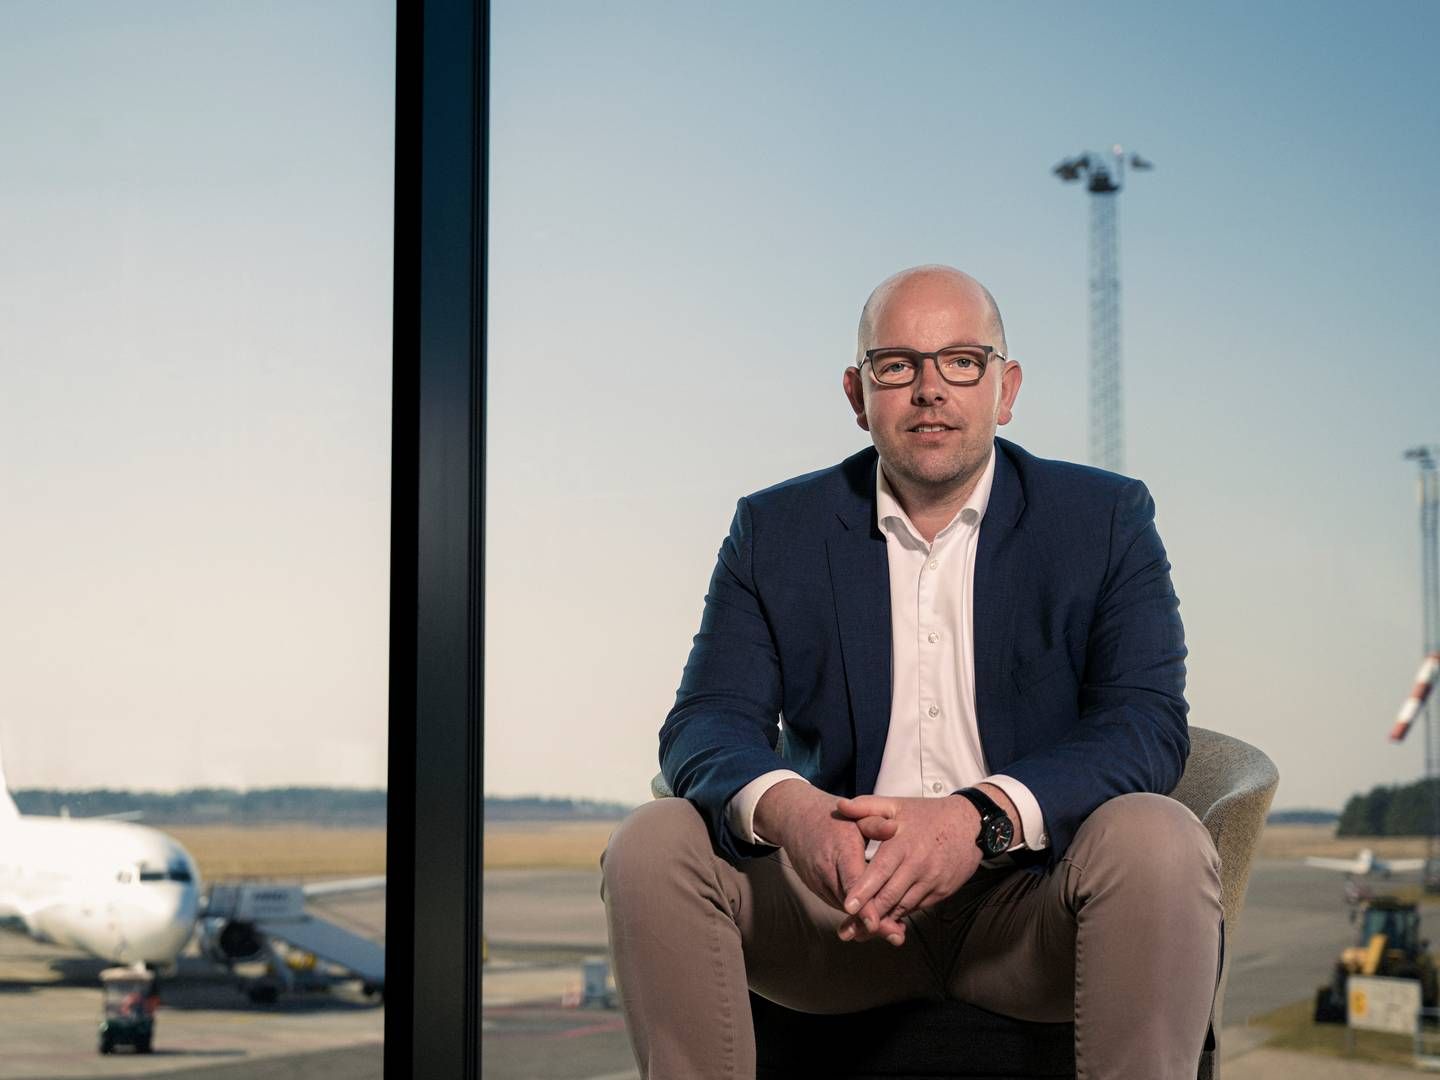 Adm. direktør for Aarhus Airport, Brian Worm, ærgrer sig over lave passagertal i november. | Foto: Pr / Aarhus Lufthavn